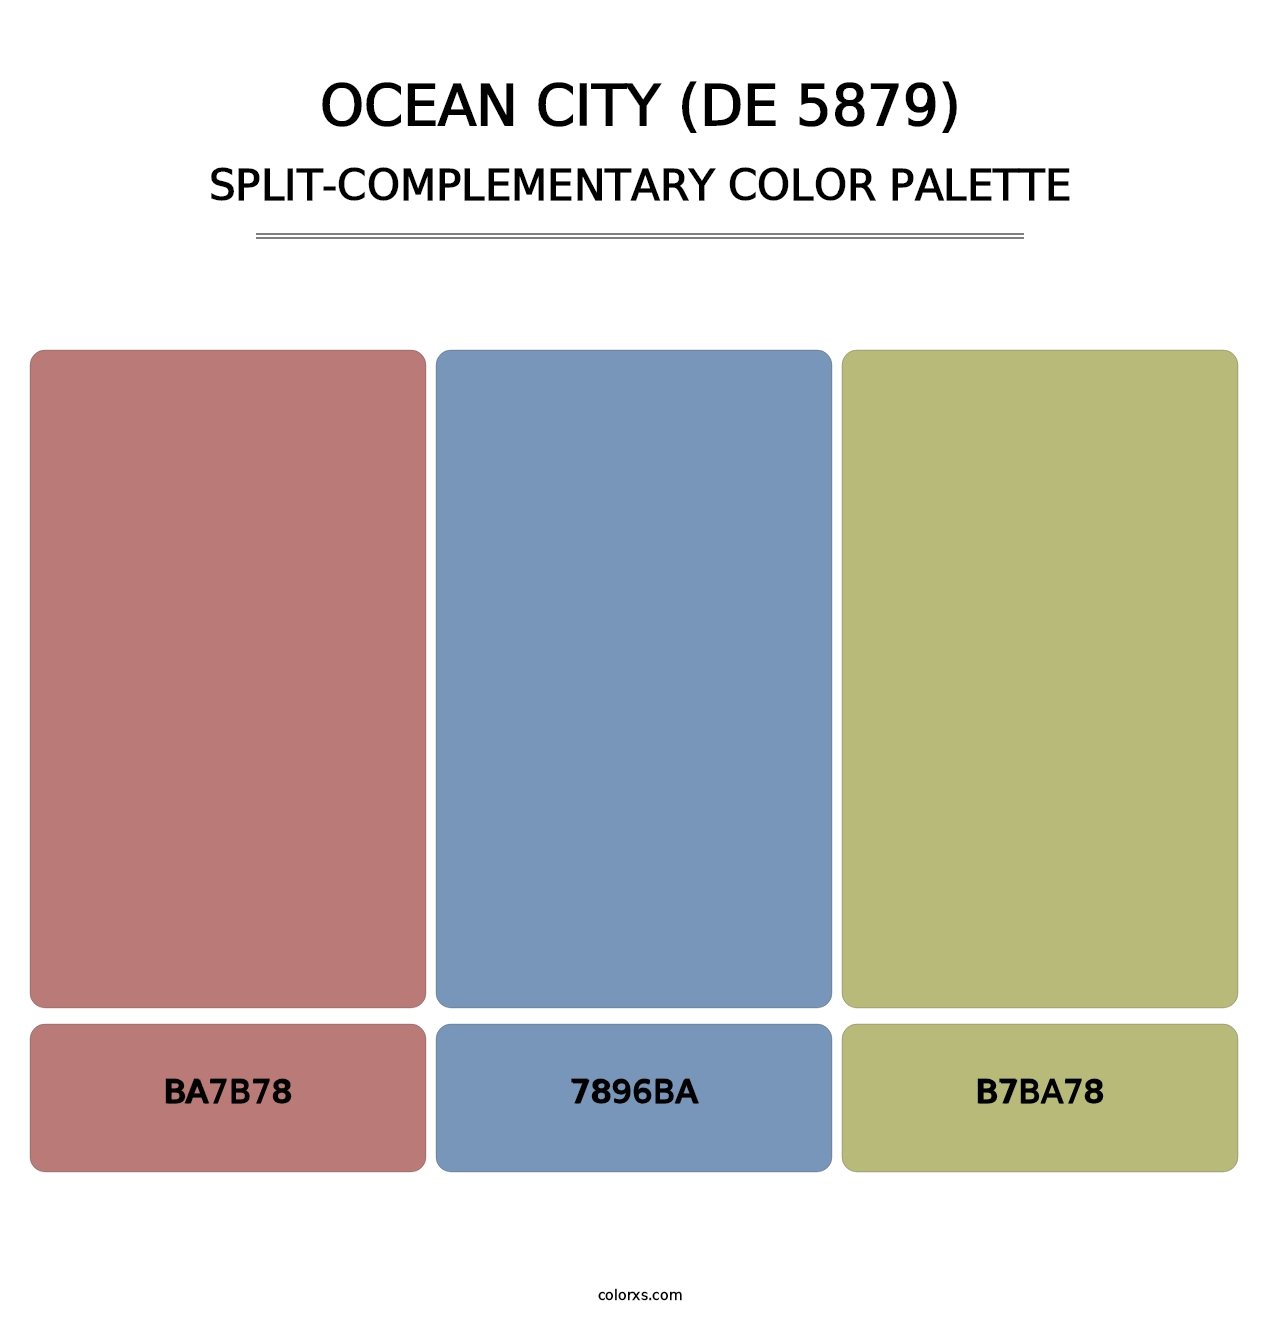 Ocean City (DE 5879) - Split-Complementary Color Palette